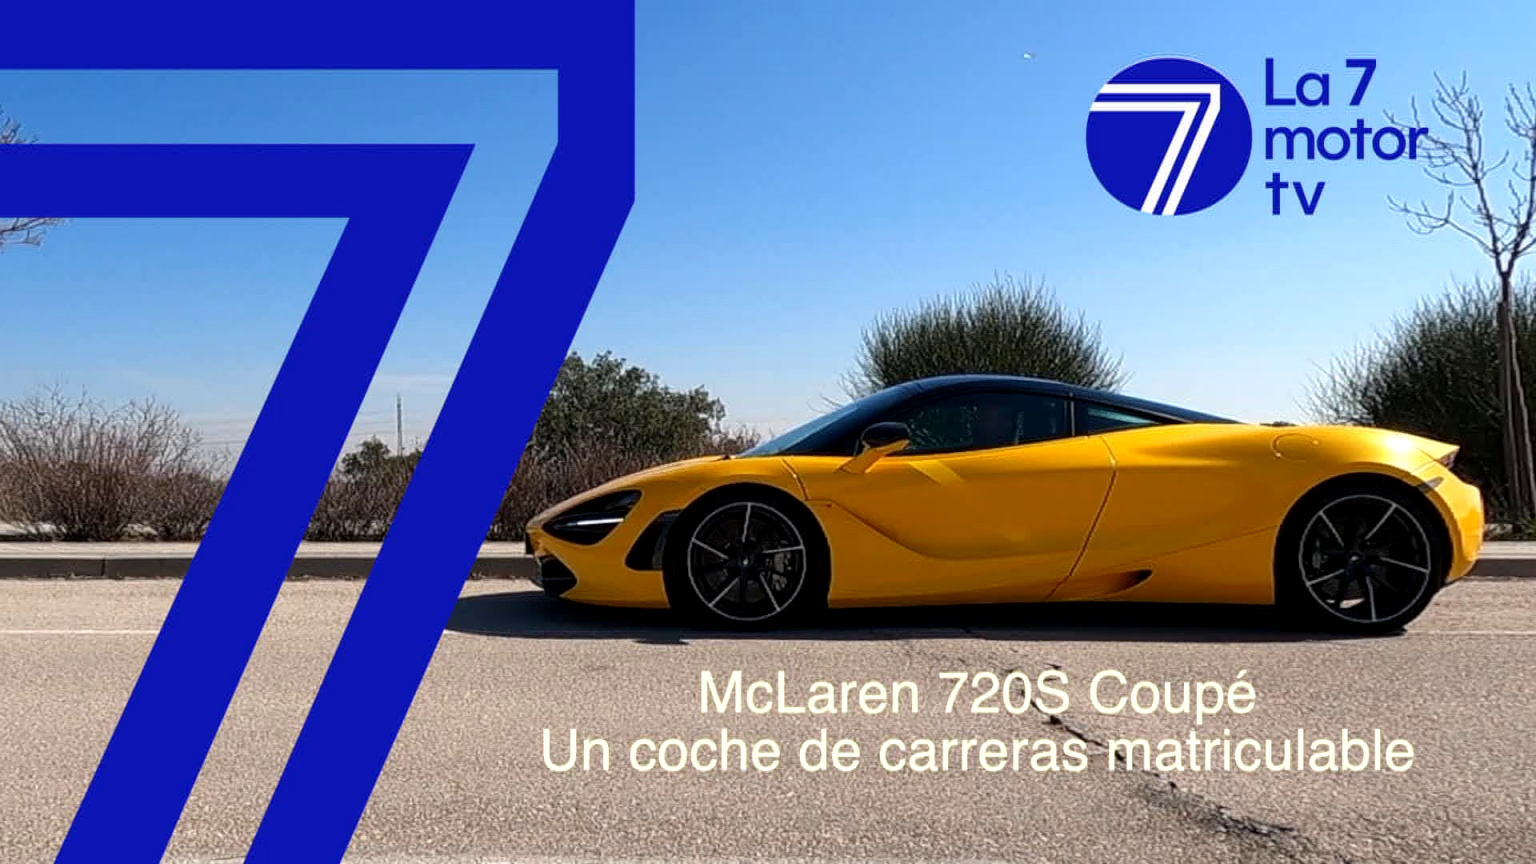 McLaren 720S Coupé: un coche de carreras matriculable